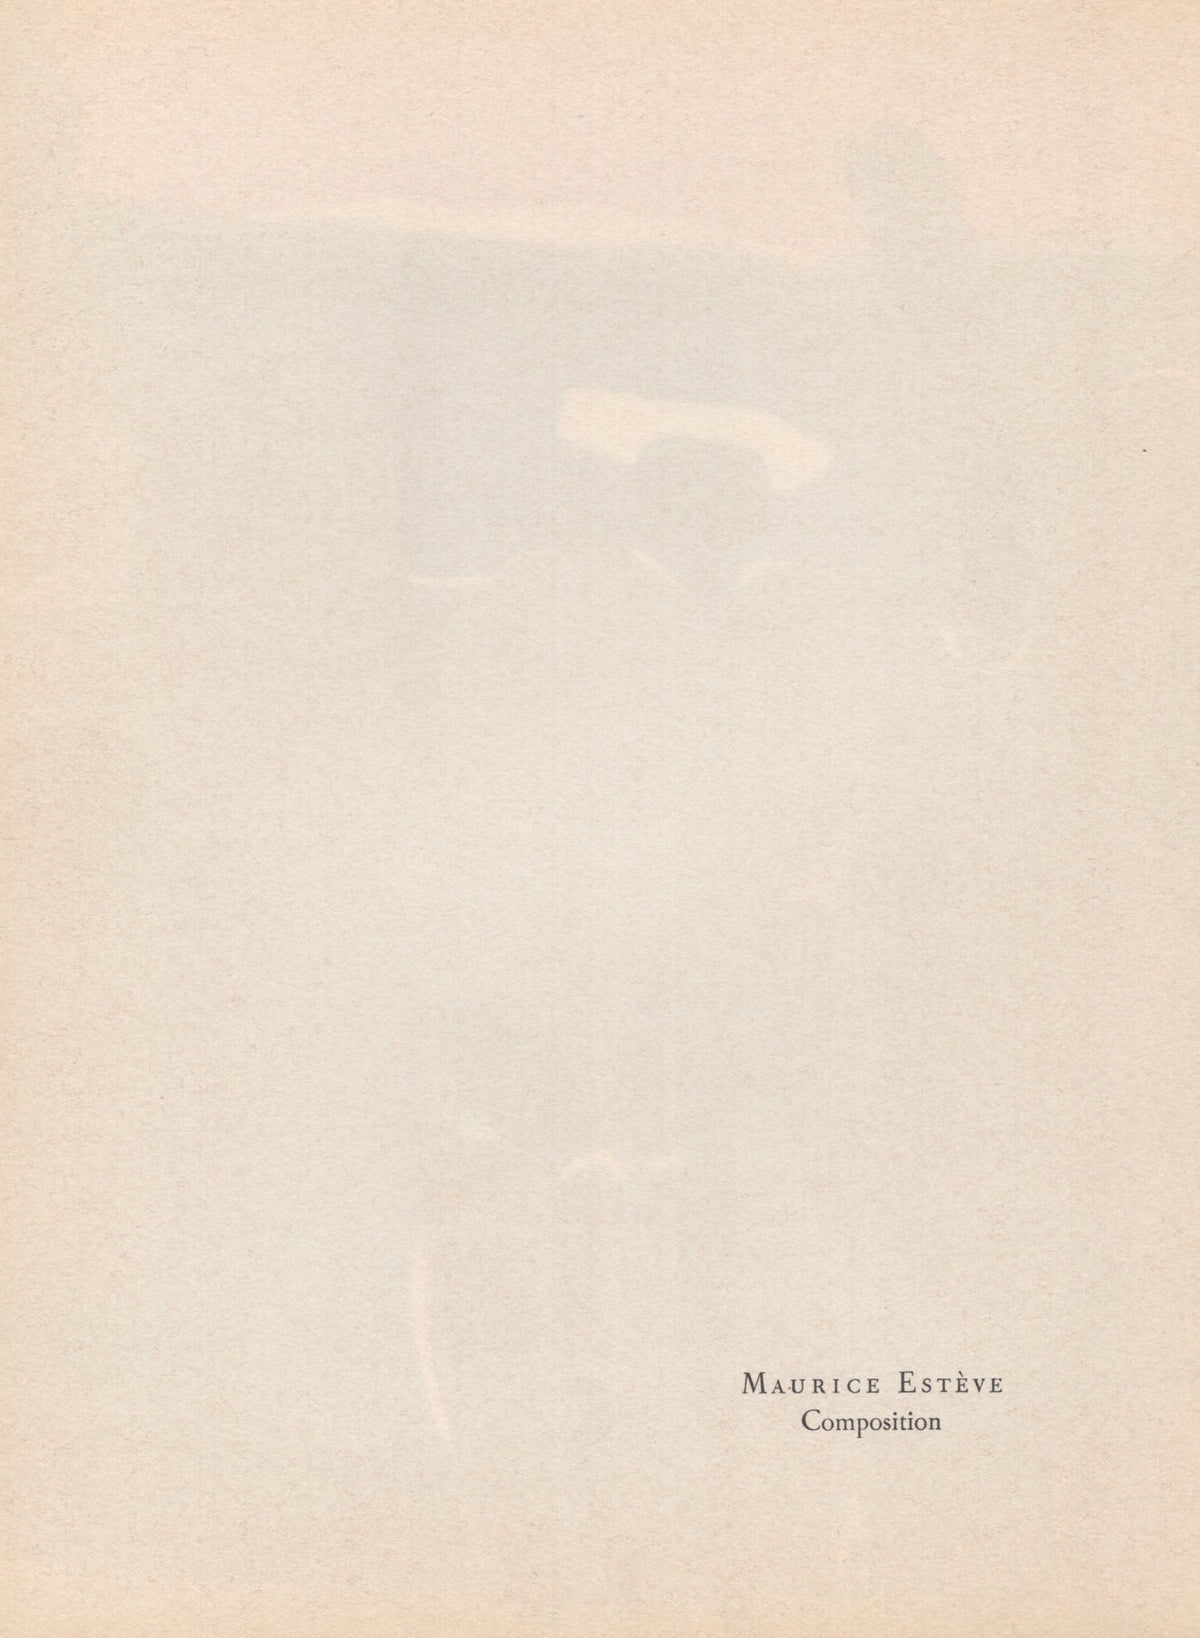 Maurice Esteve - &quot;Composition&quot; - Mourlot Press 1964 Lithograph - 7.5 x 10&quot;